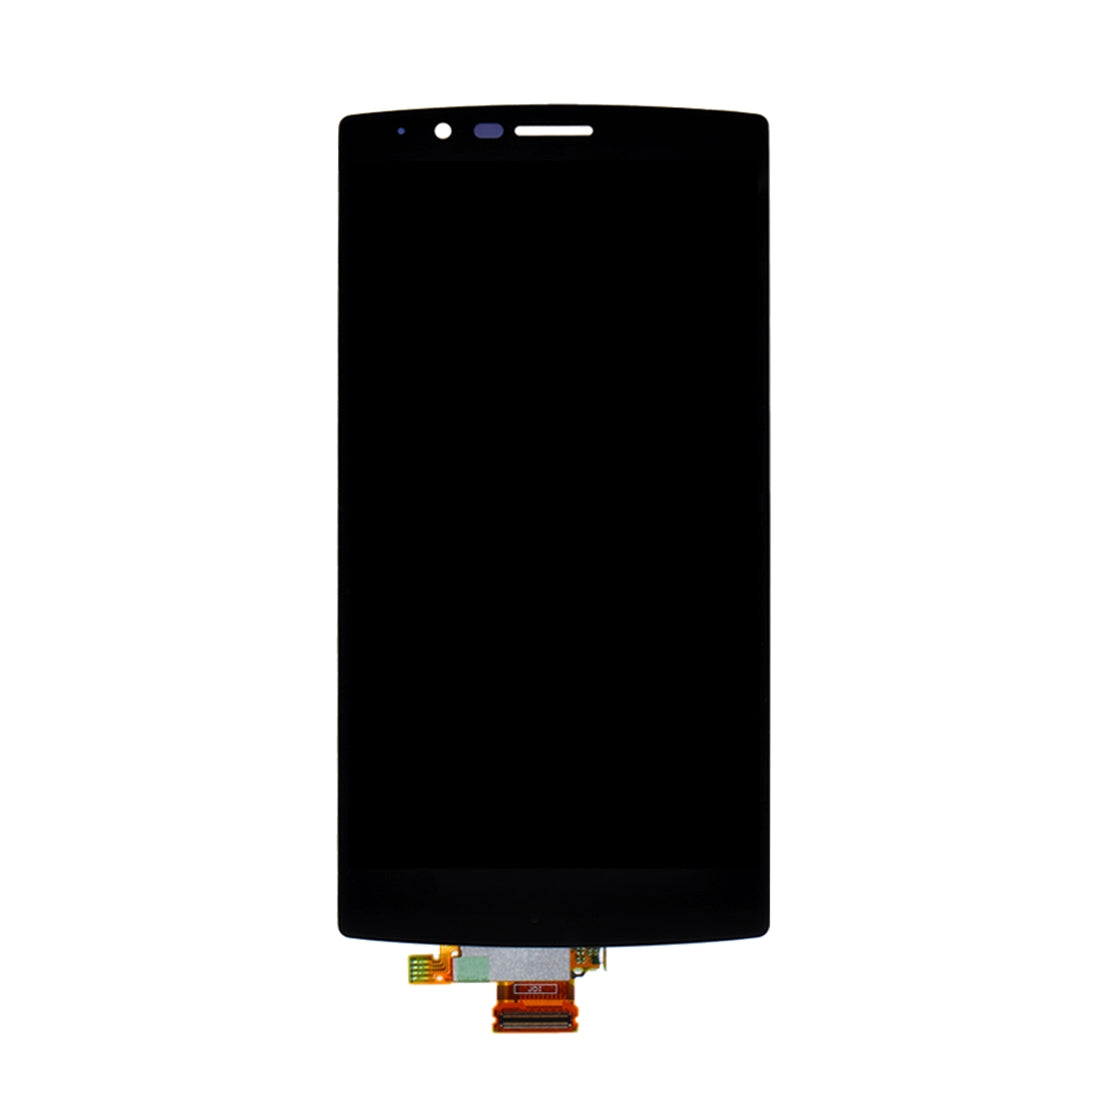 LCD Screen + Touch LG G4 H810 VS999 F500 F500S F500K F500L H81 Black